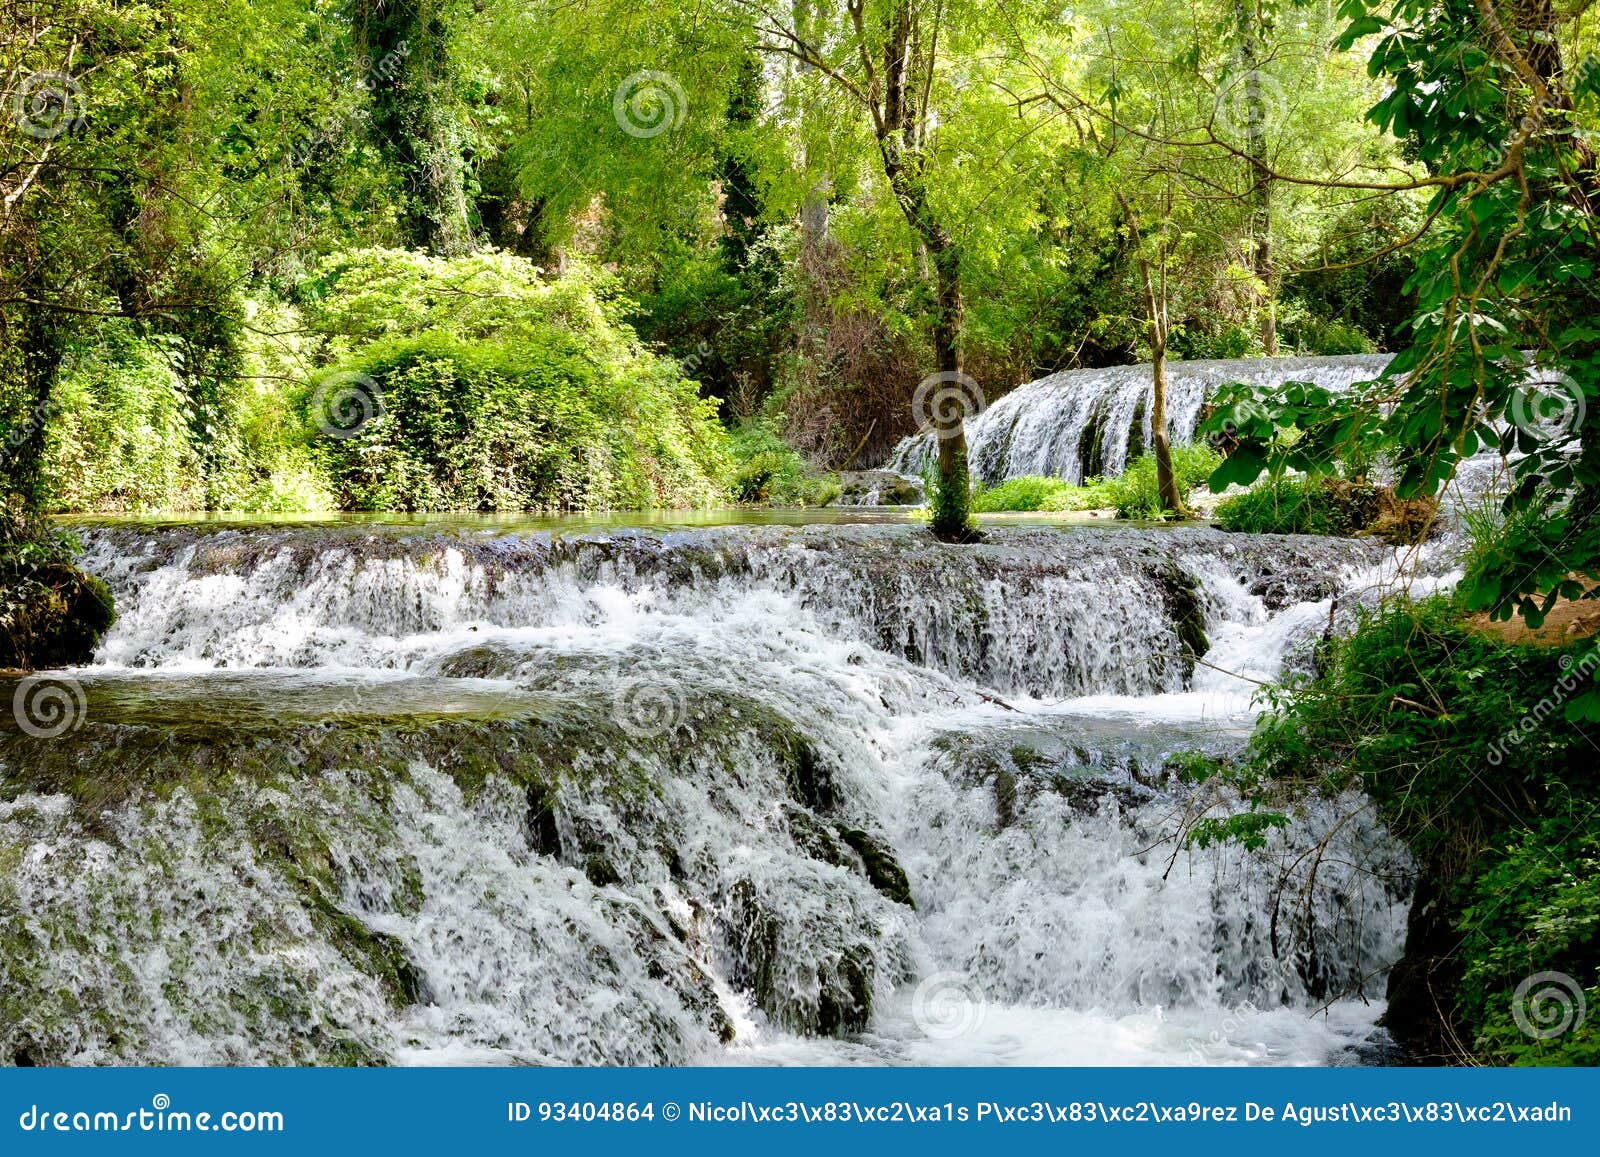 river waterfalls in monasterio de piedra, nuevalos, spain